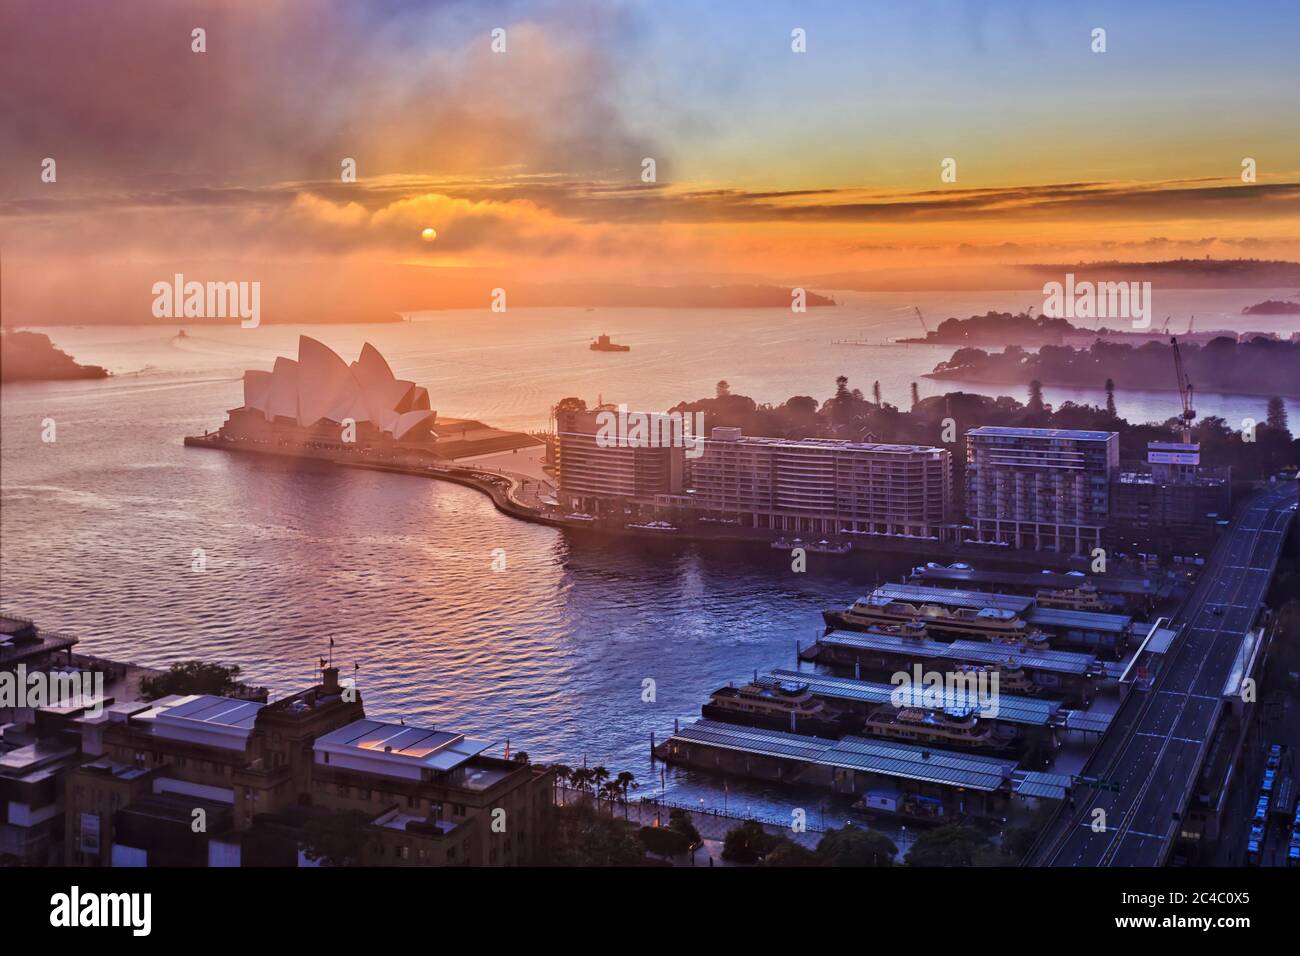 Nebbia e nuvole all'alba che coprono il sole sui principali punti di riferimento della città di Sydney, il lungomare Circular Quay del porto di Sydney. Foto Stock